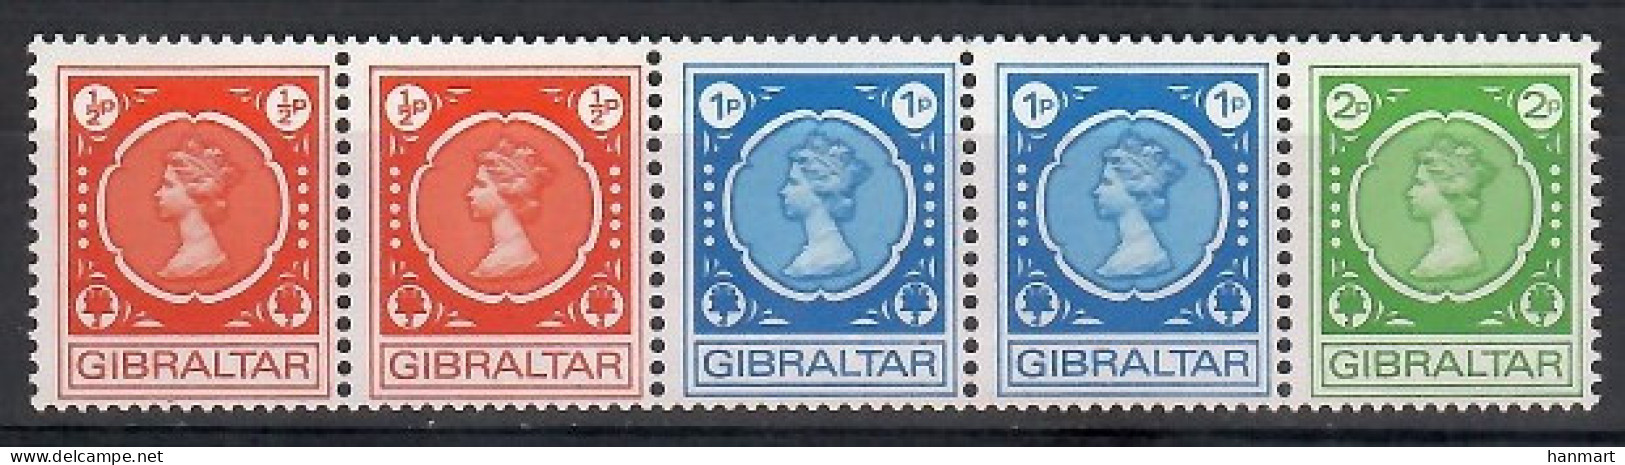 Gibraltar 1971 Mi 276-278 MNH  (ZE1 GIBfun276-278) - Königshäuser, Adel